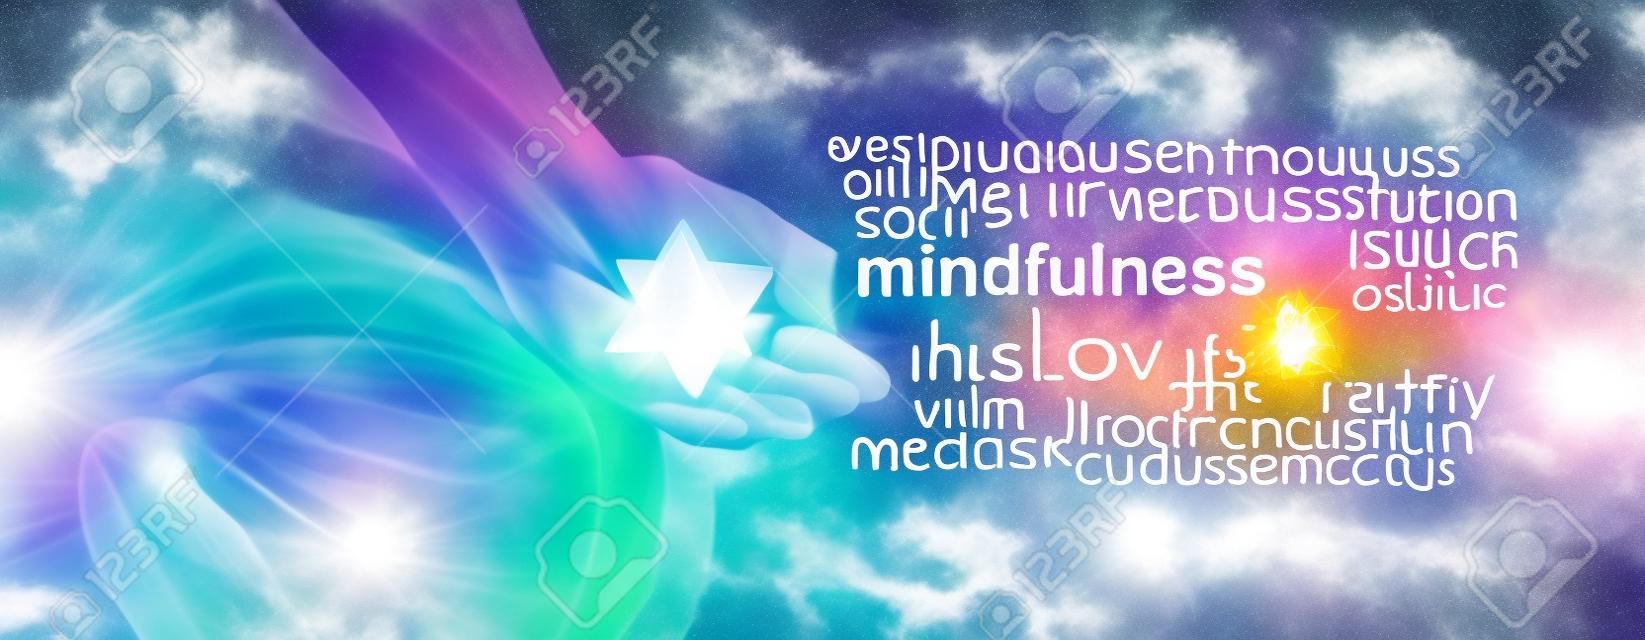 Mindfulness Meditation Word Cloud Banner - Femmina seduto nella posizione del loto sul lato sinistro con luce solare in streaming in possesso di un meditando cristallo Merkabah e una parola nuvola consapevolezza sul lato destro